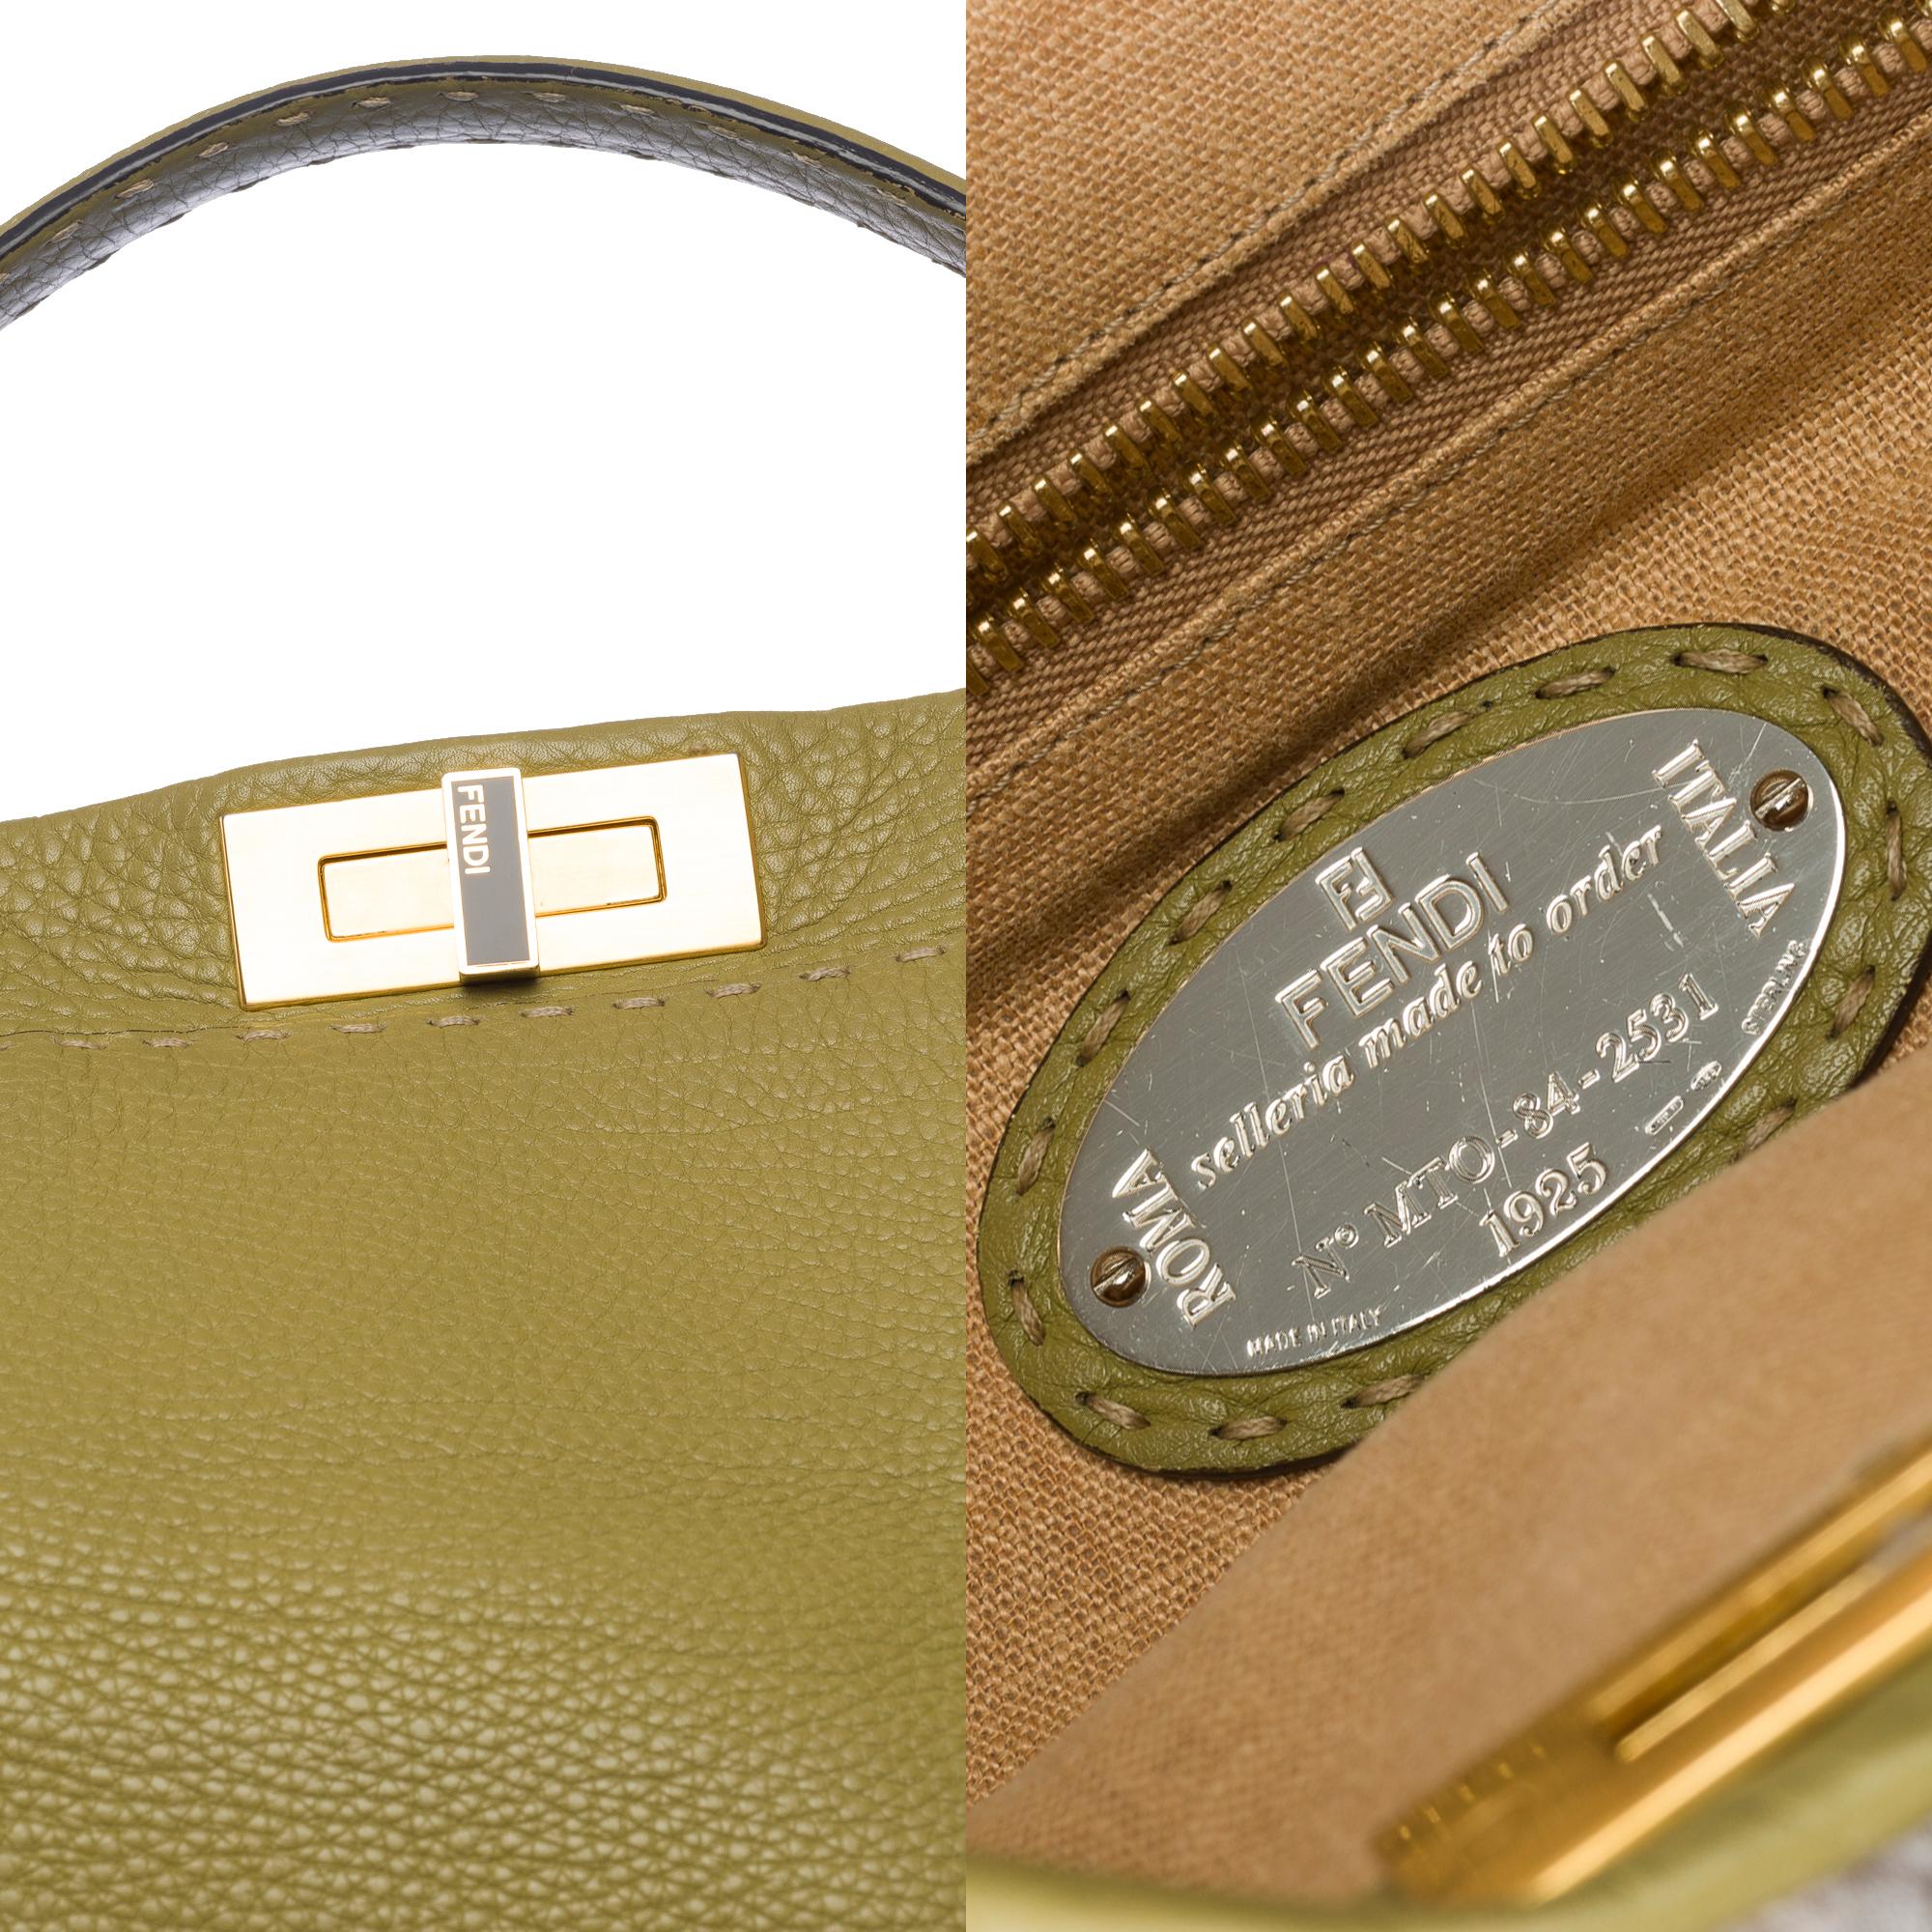 Fendi Grand Modele Peekaboo handbag strap in Olive Green calf leather, GHW For Sale 2